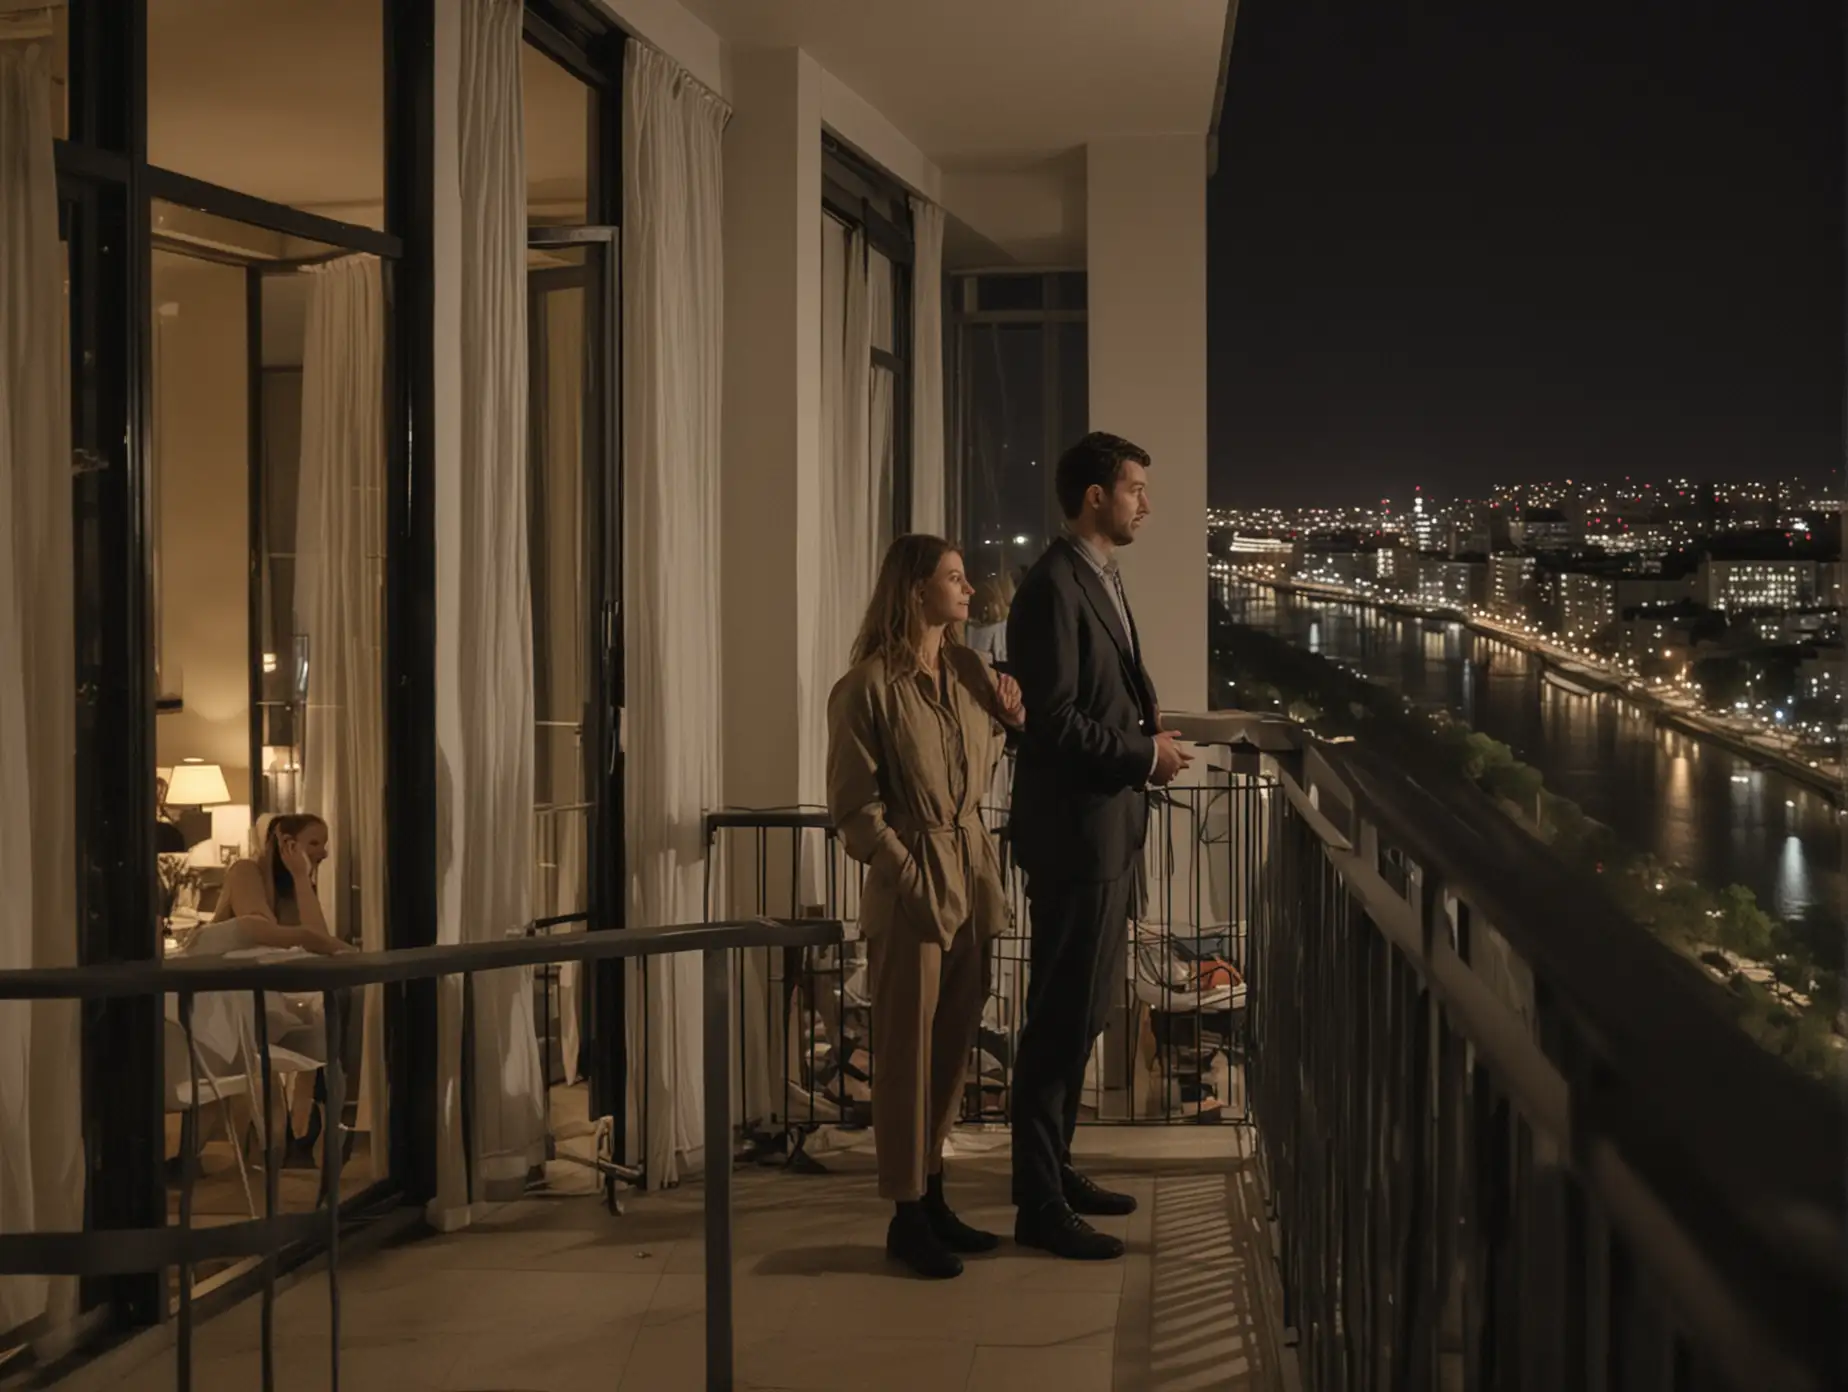 мужчина и женщина стоят на балконе 8 этажа и смотрят на реку, ночь, они у себя в квартире в обычной одежде